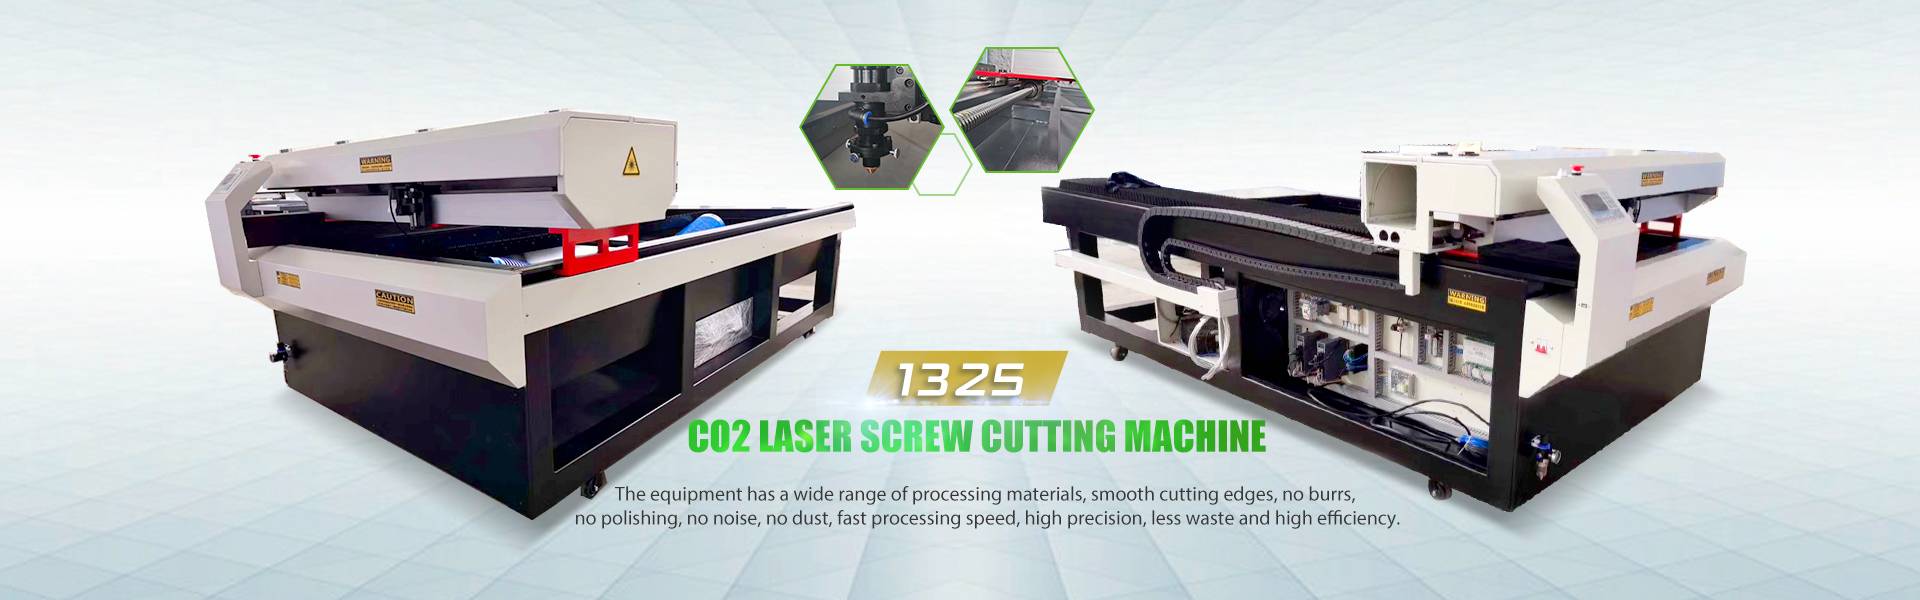 CO2 laser screw cutting machine